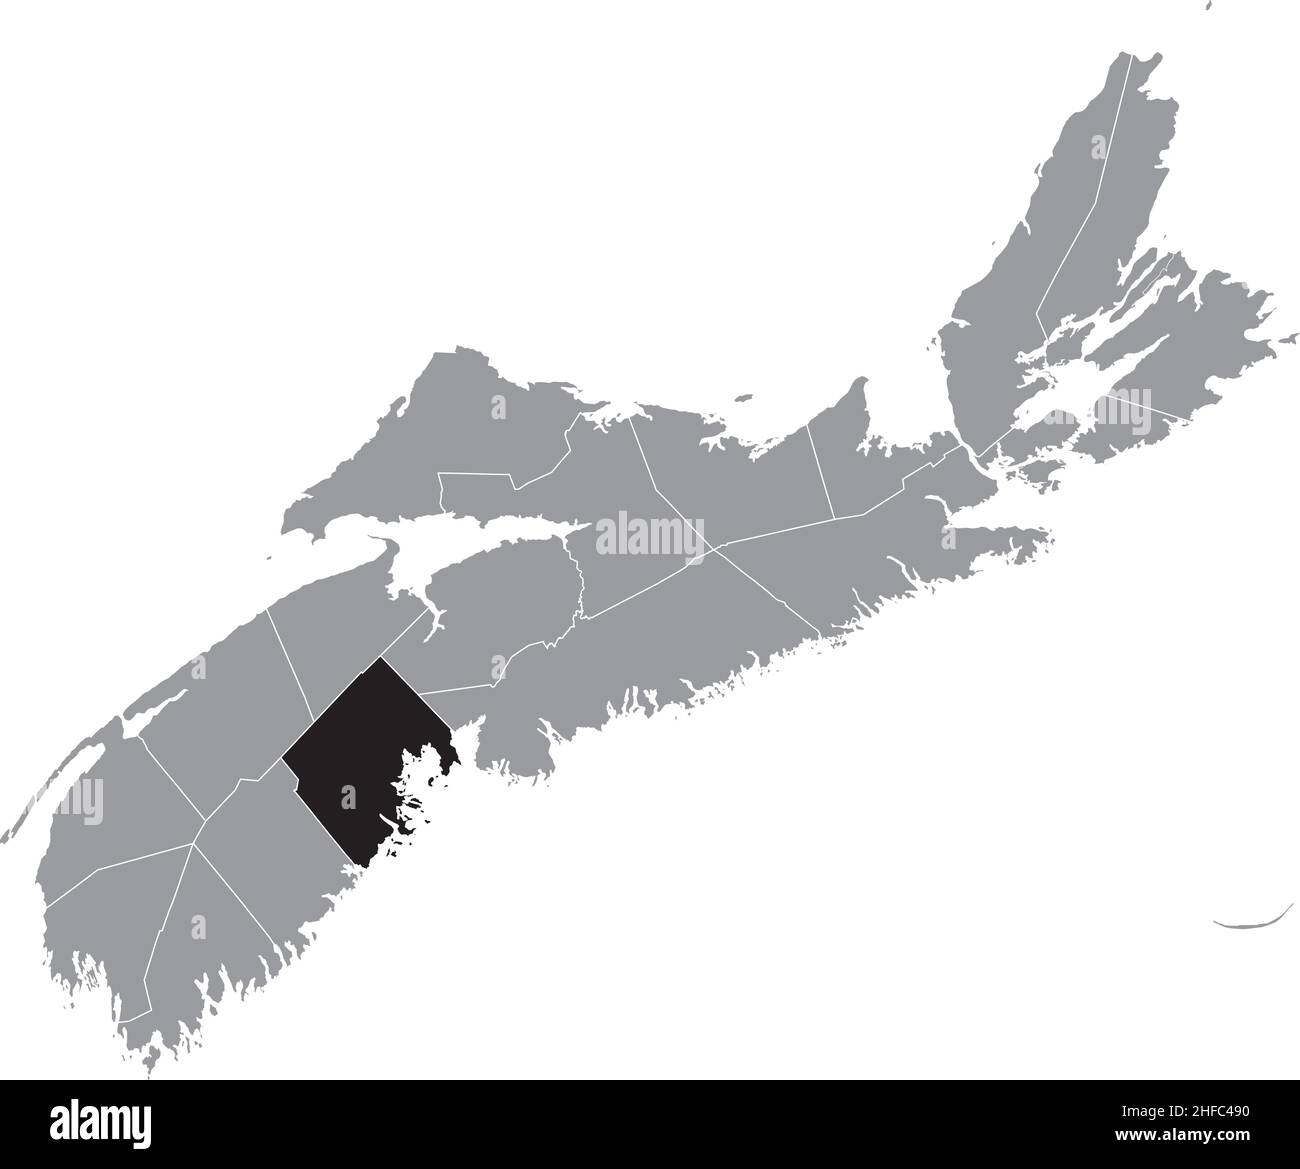 Noir plat blanc carte d'emplacement en surbrillance du COMTÉ DE LUNENBURG carte administrative grise des comtés de la province canadienne de la Nouvelle-Écosse, Cana Illustration de Vecteur